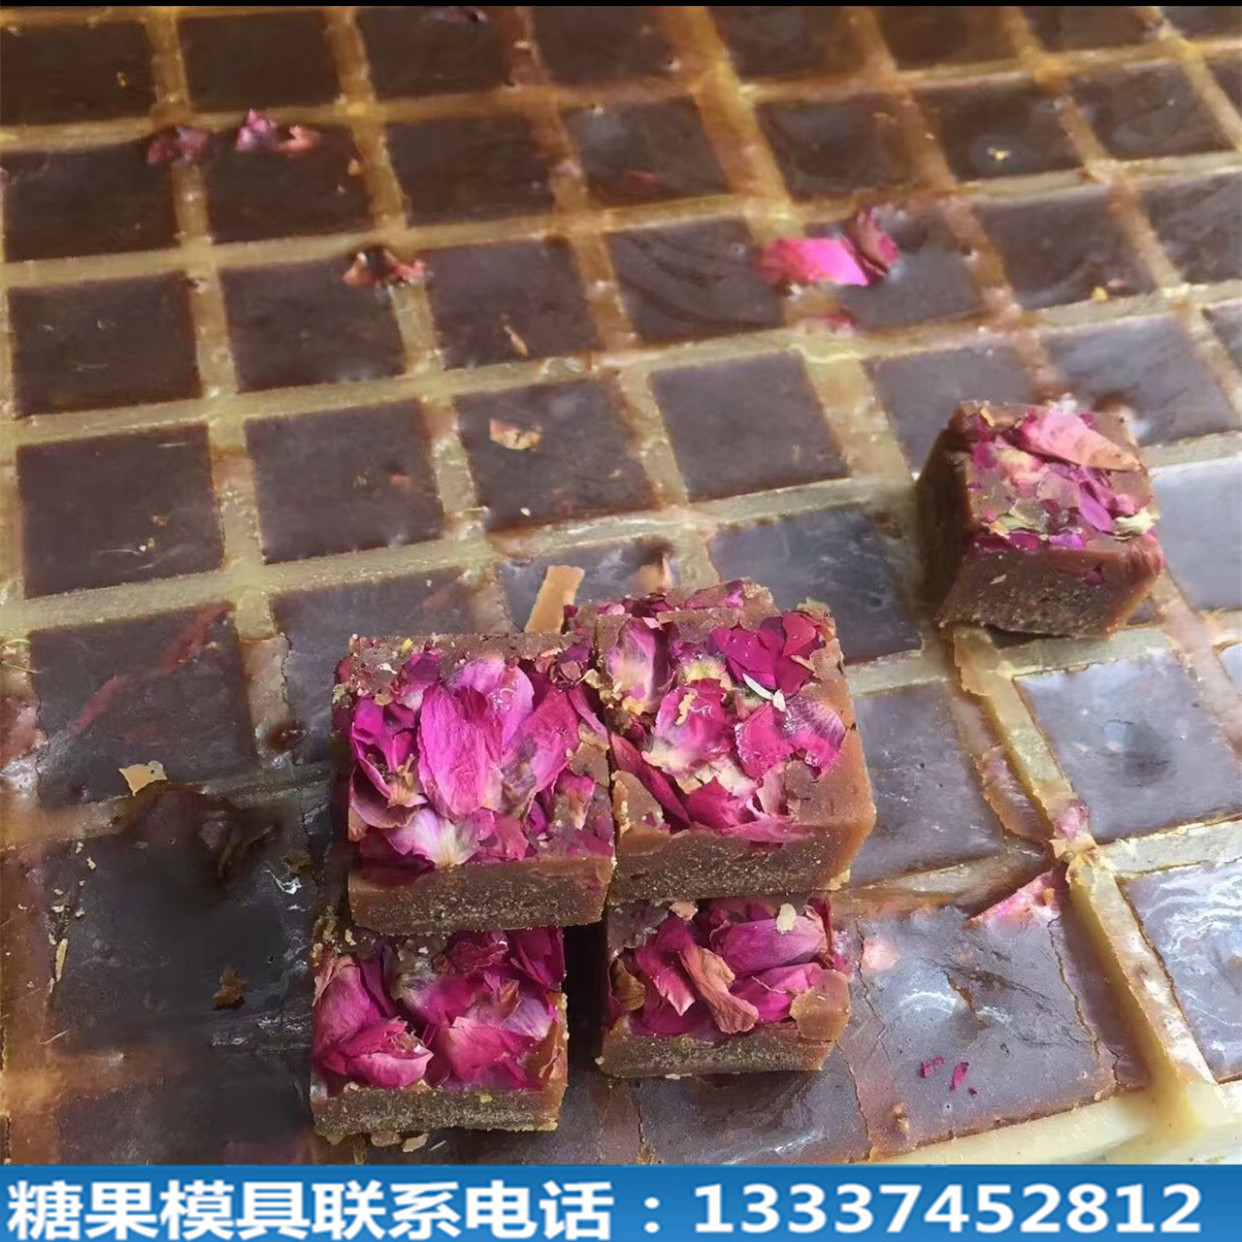 贵州习水：红糖飘香幸福来 - 当代先锋网 - 遵义